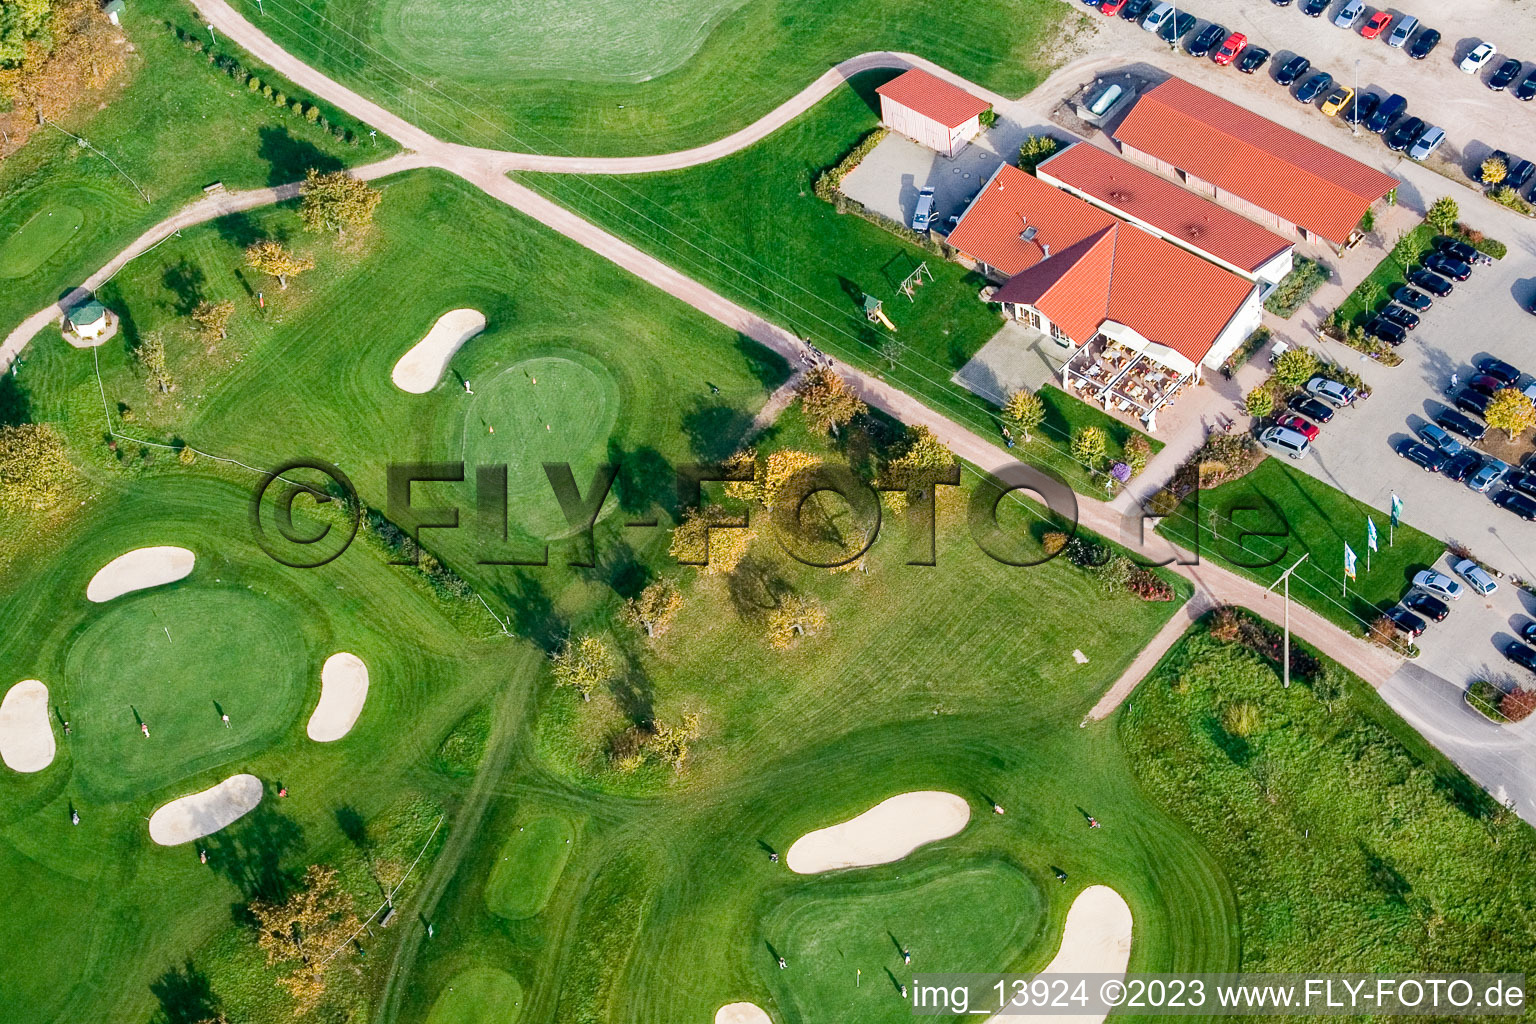 Urloffen, Golfclub Urloffen e.V in Appenweier im Bundesland Baden-Württemberg, Deutschland von der Drohne aus gesehen